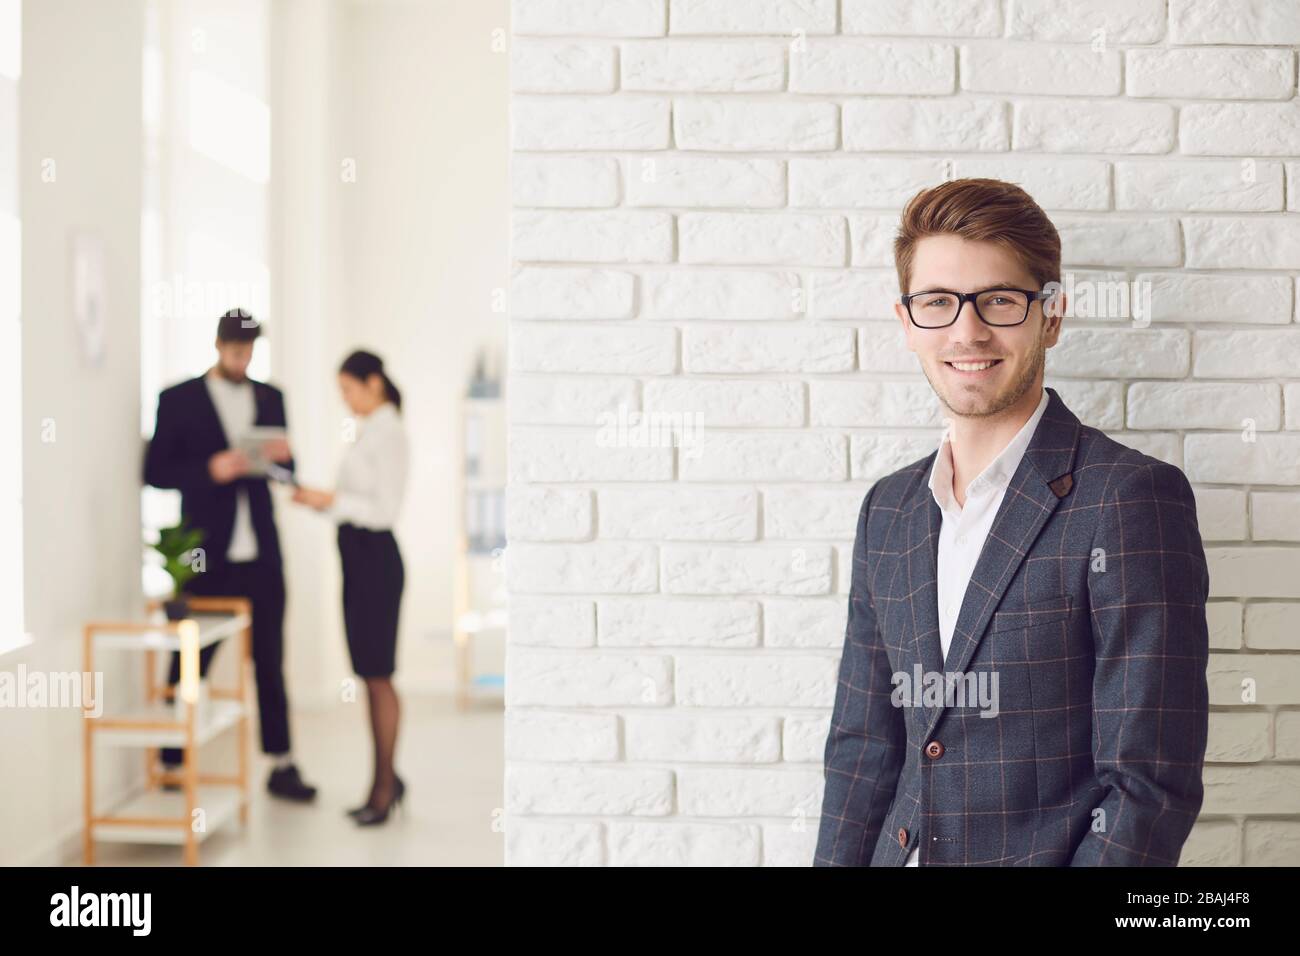 Lächelnder positiver Geschäftsmann in legerer Kleidung, der in einem weißen Büro an einer weißen Wand steht. Stockfoto